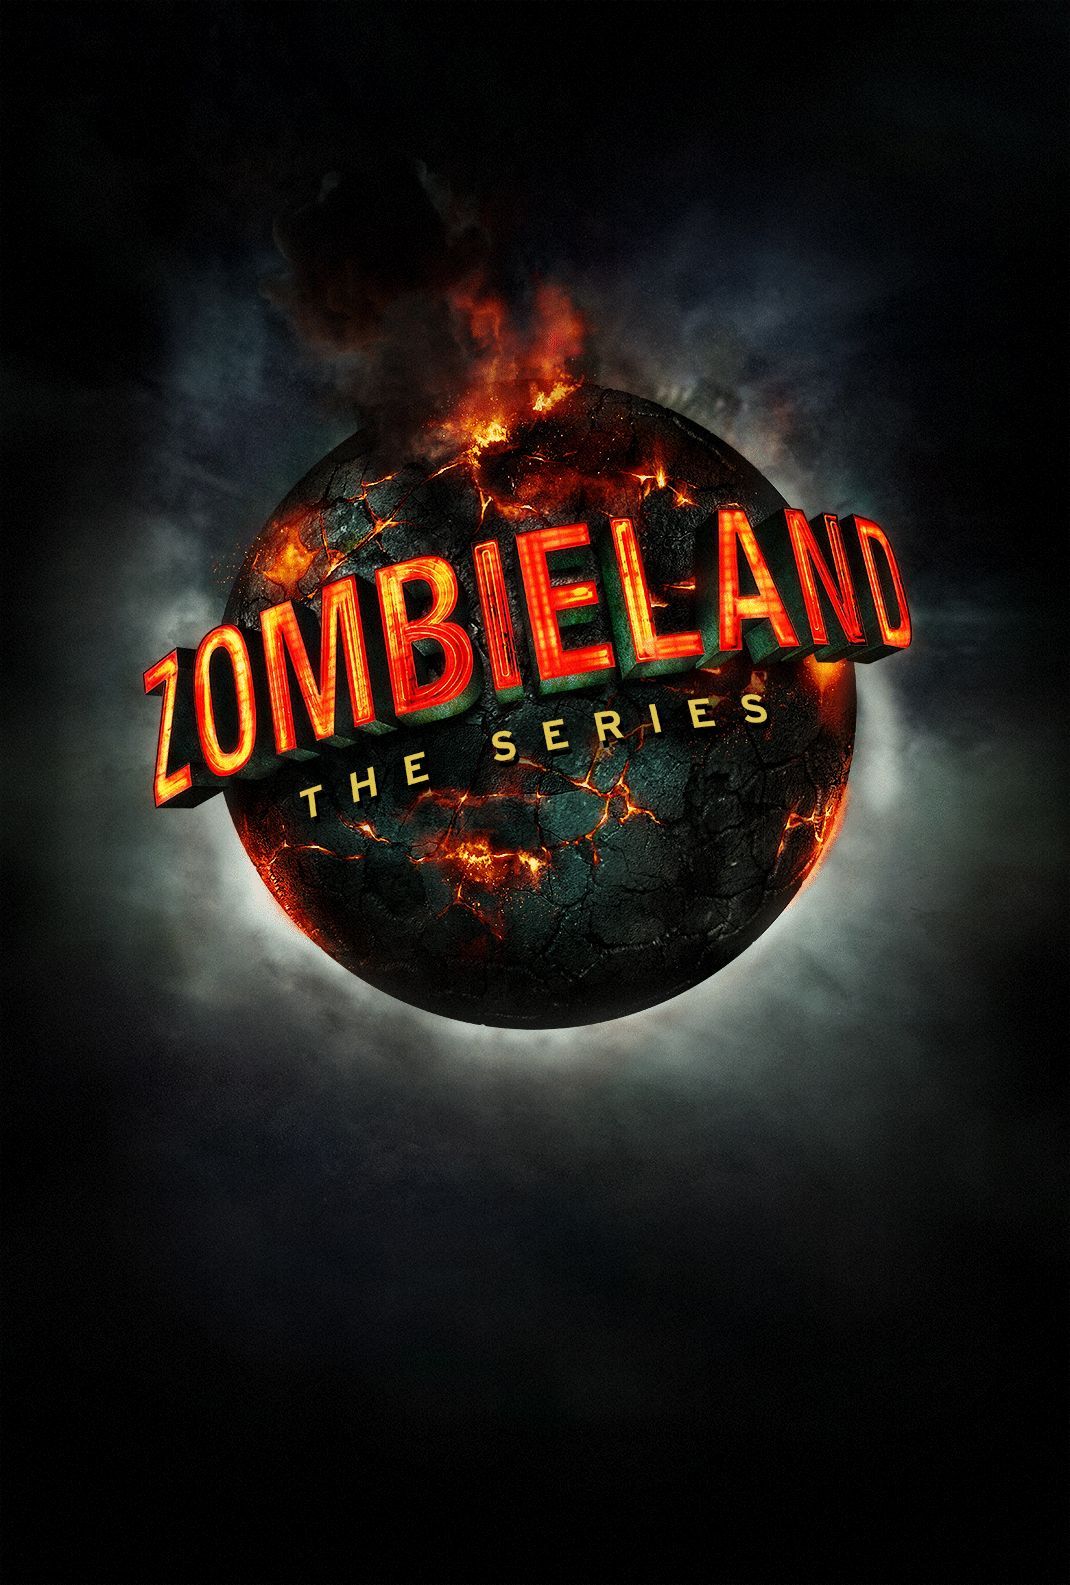 zombieland movie free online